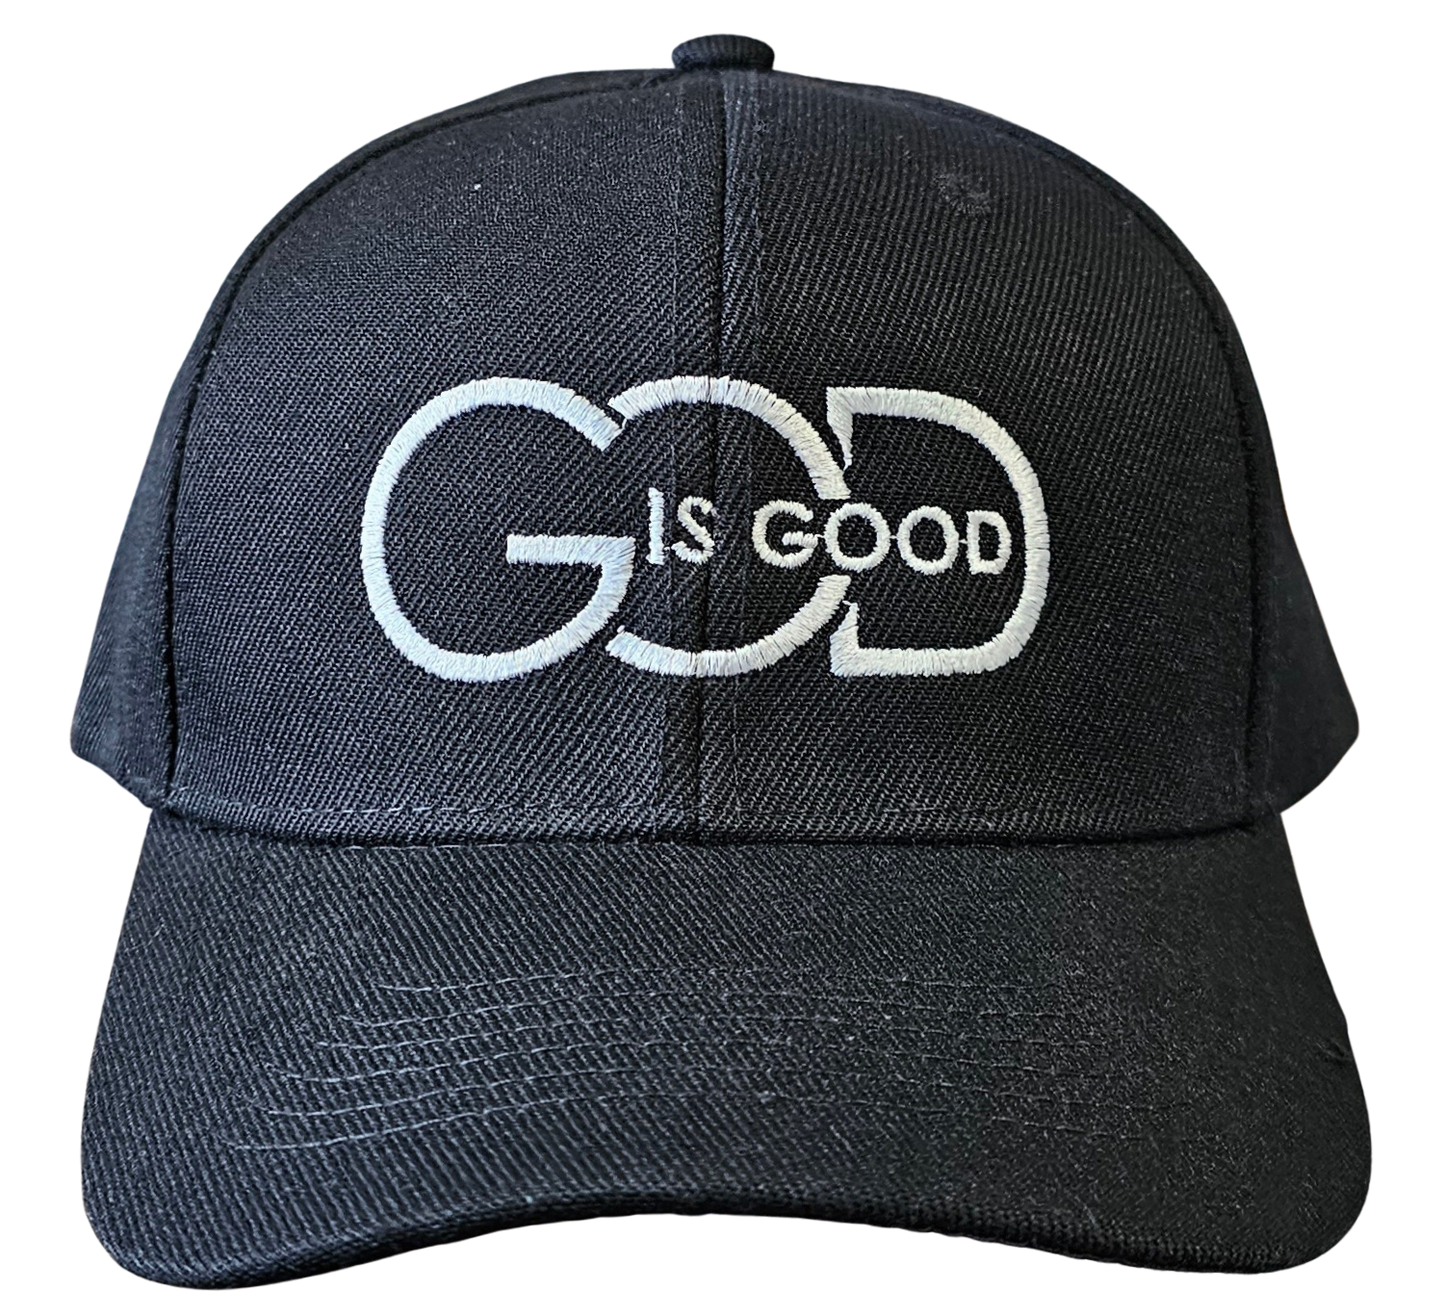 God is Good SnapBack Cap/Hat